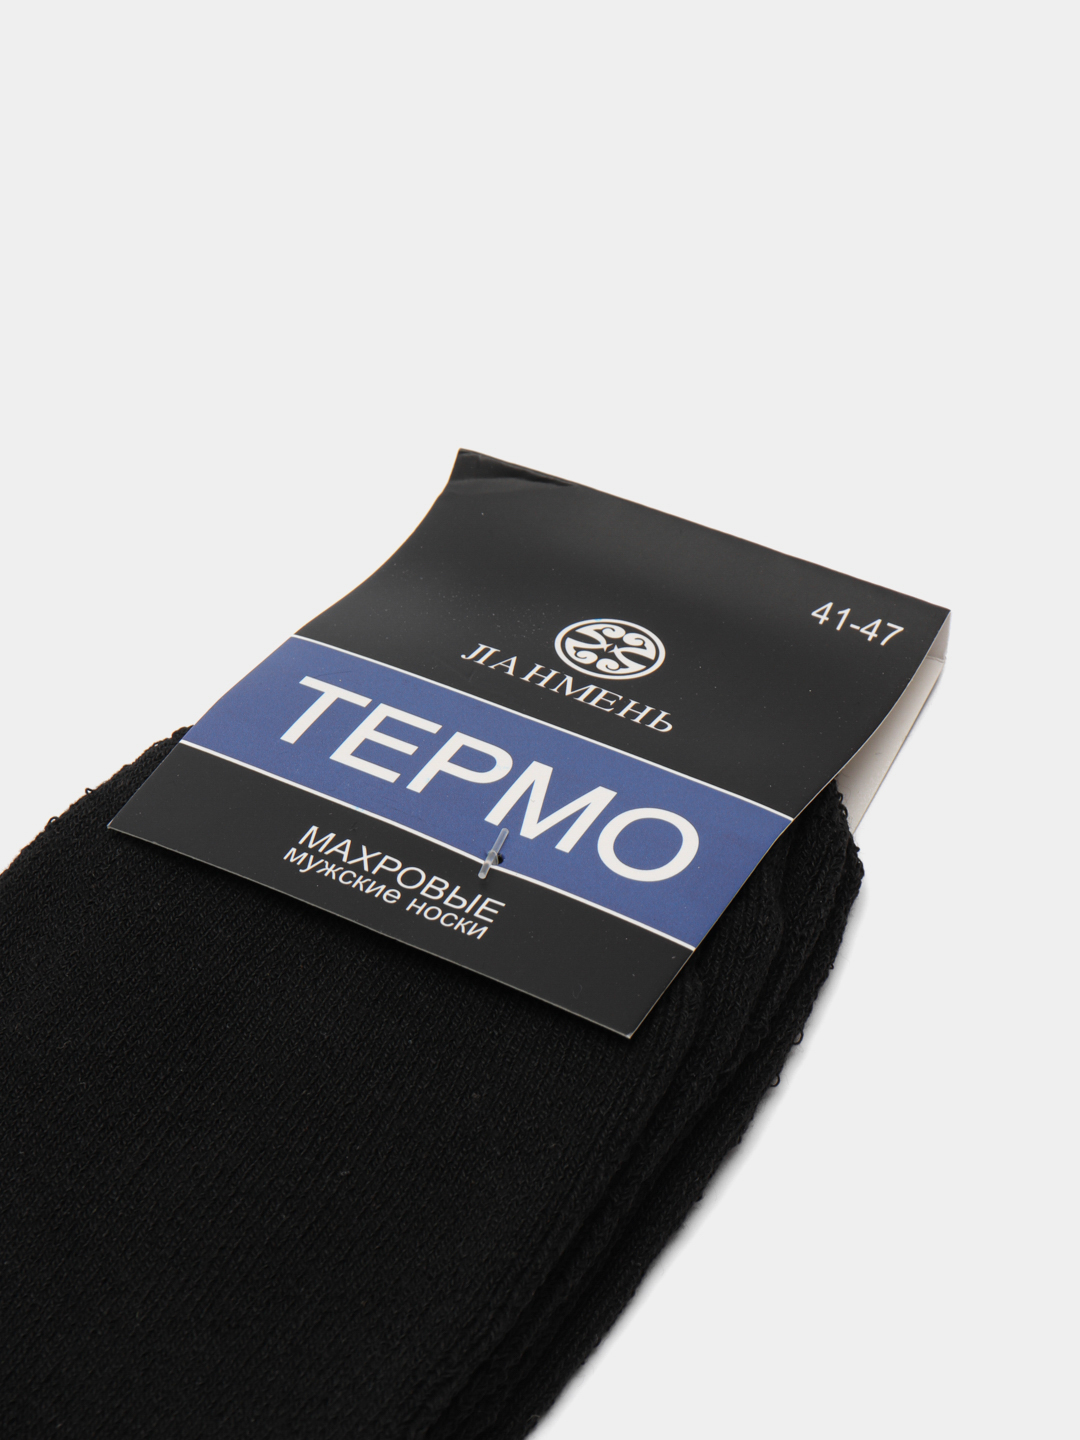 Зимние носки, термобелье, термоноски, теплые, мужские купить по цене 399 ₽  в интернет-магазине KazanExpress